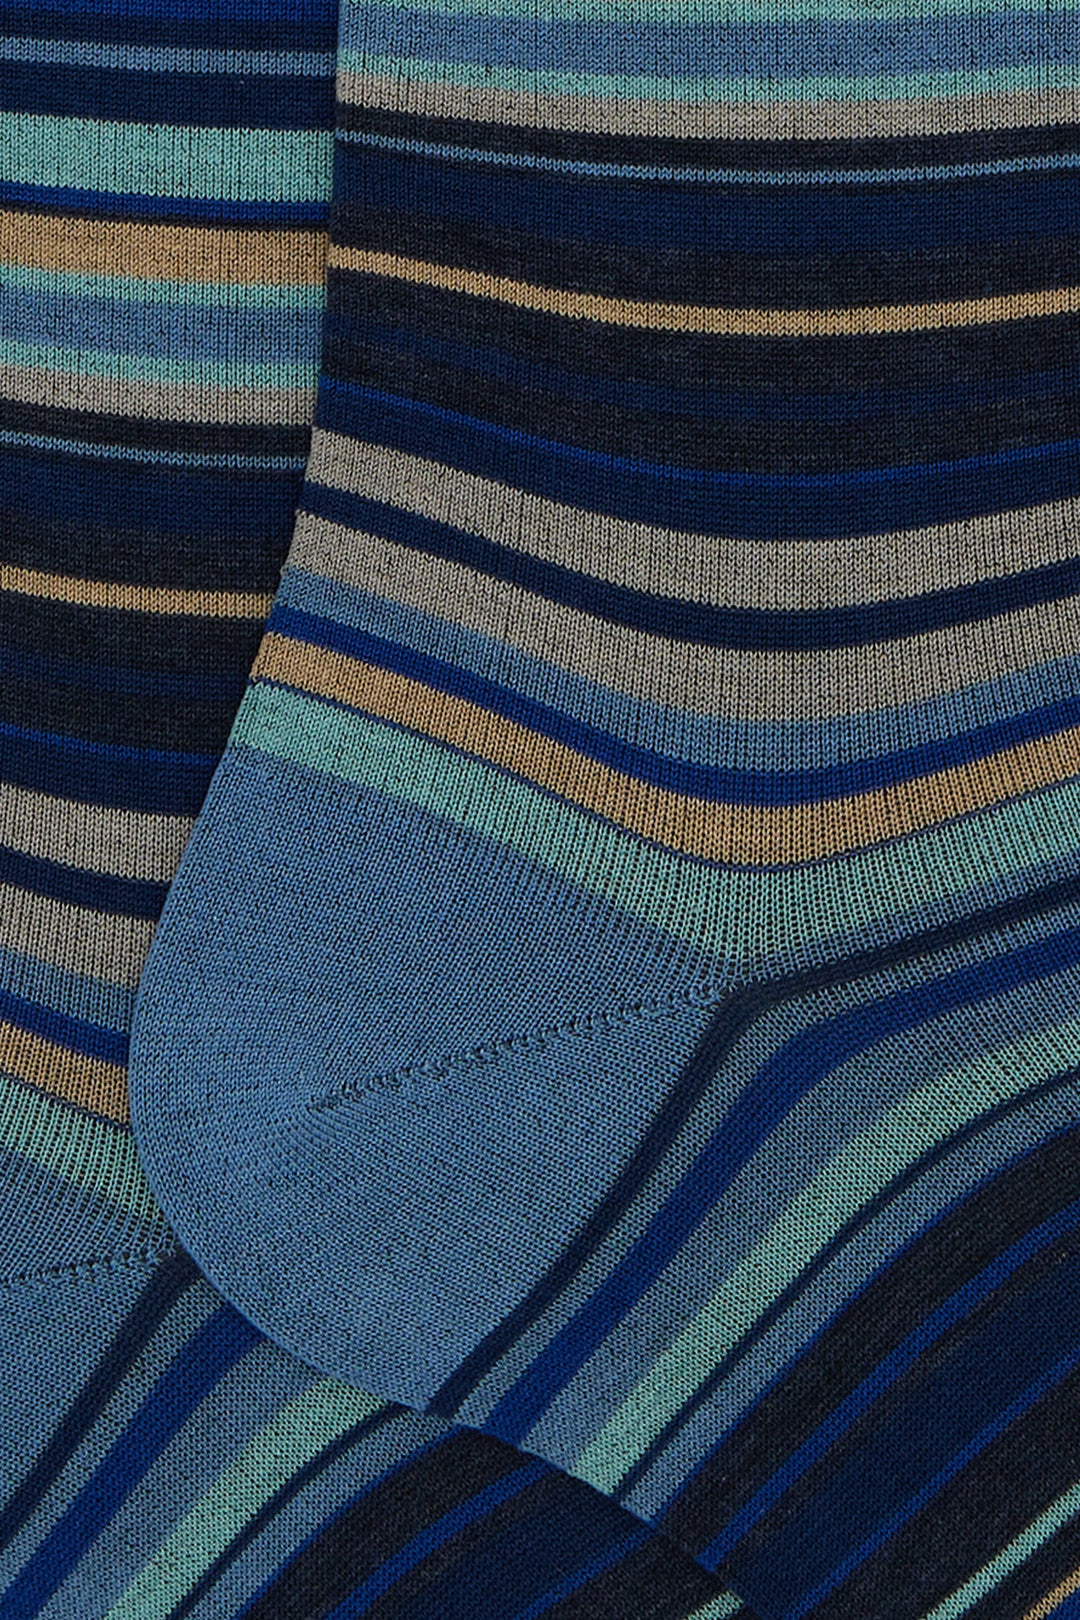 GALLO Calze lunghe cotone righe sottilissime 7 colore blu - Mancinelli 1954